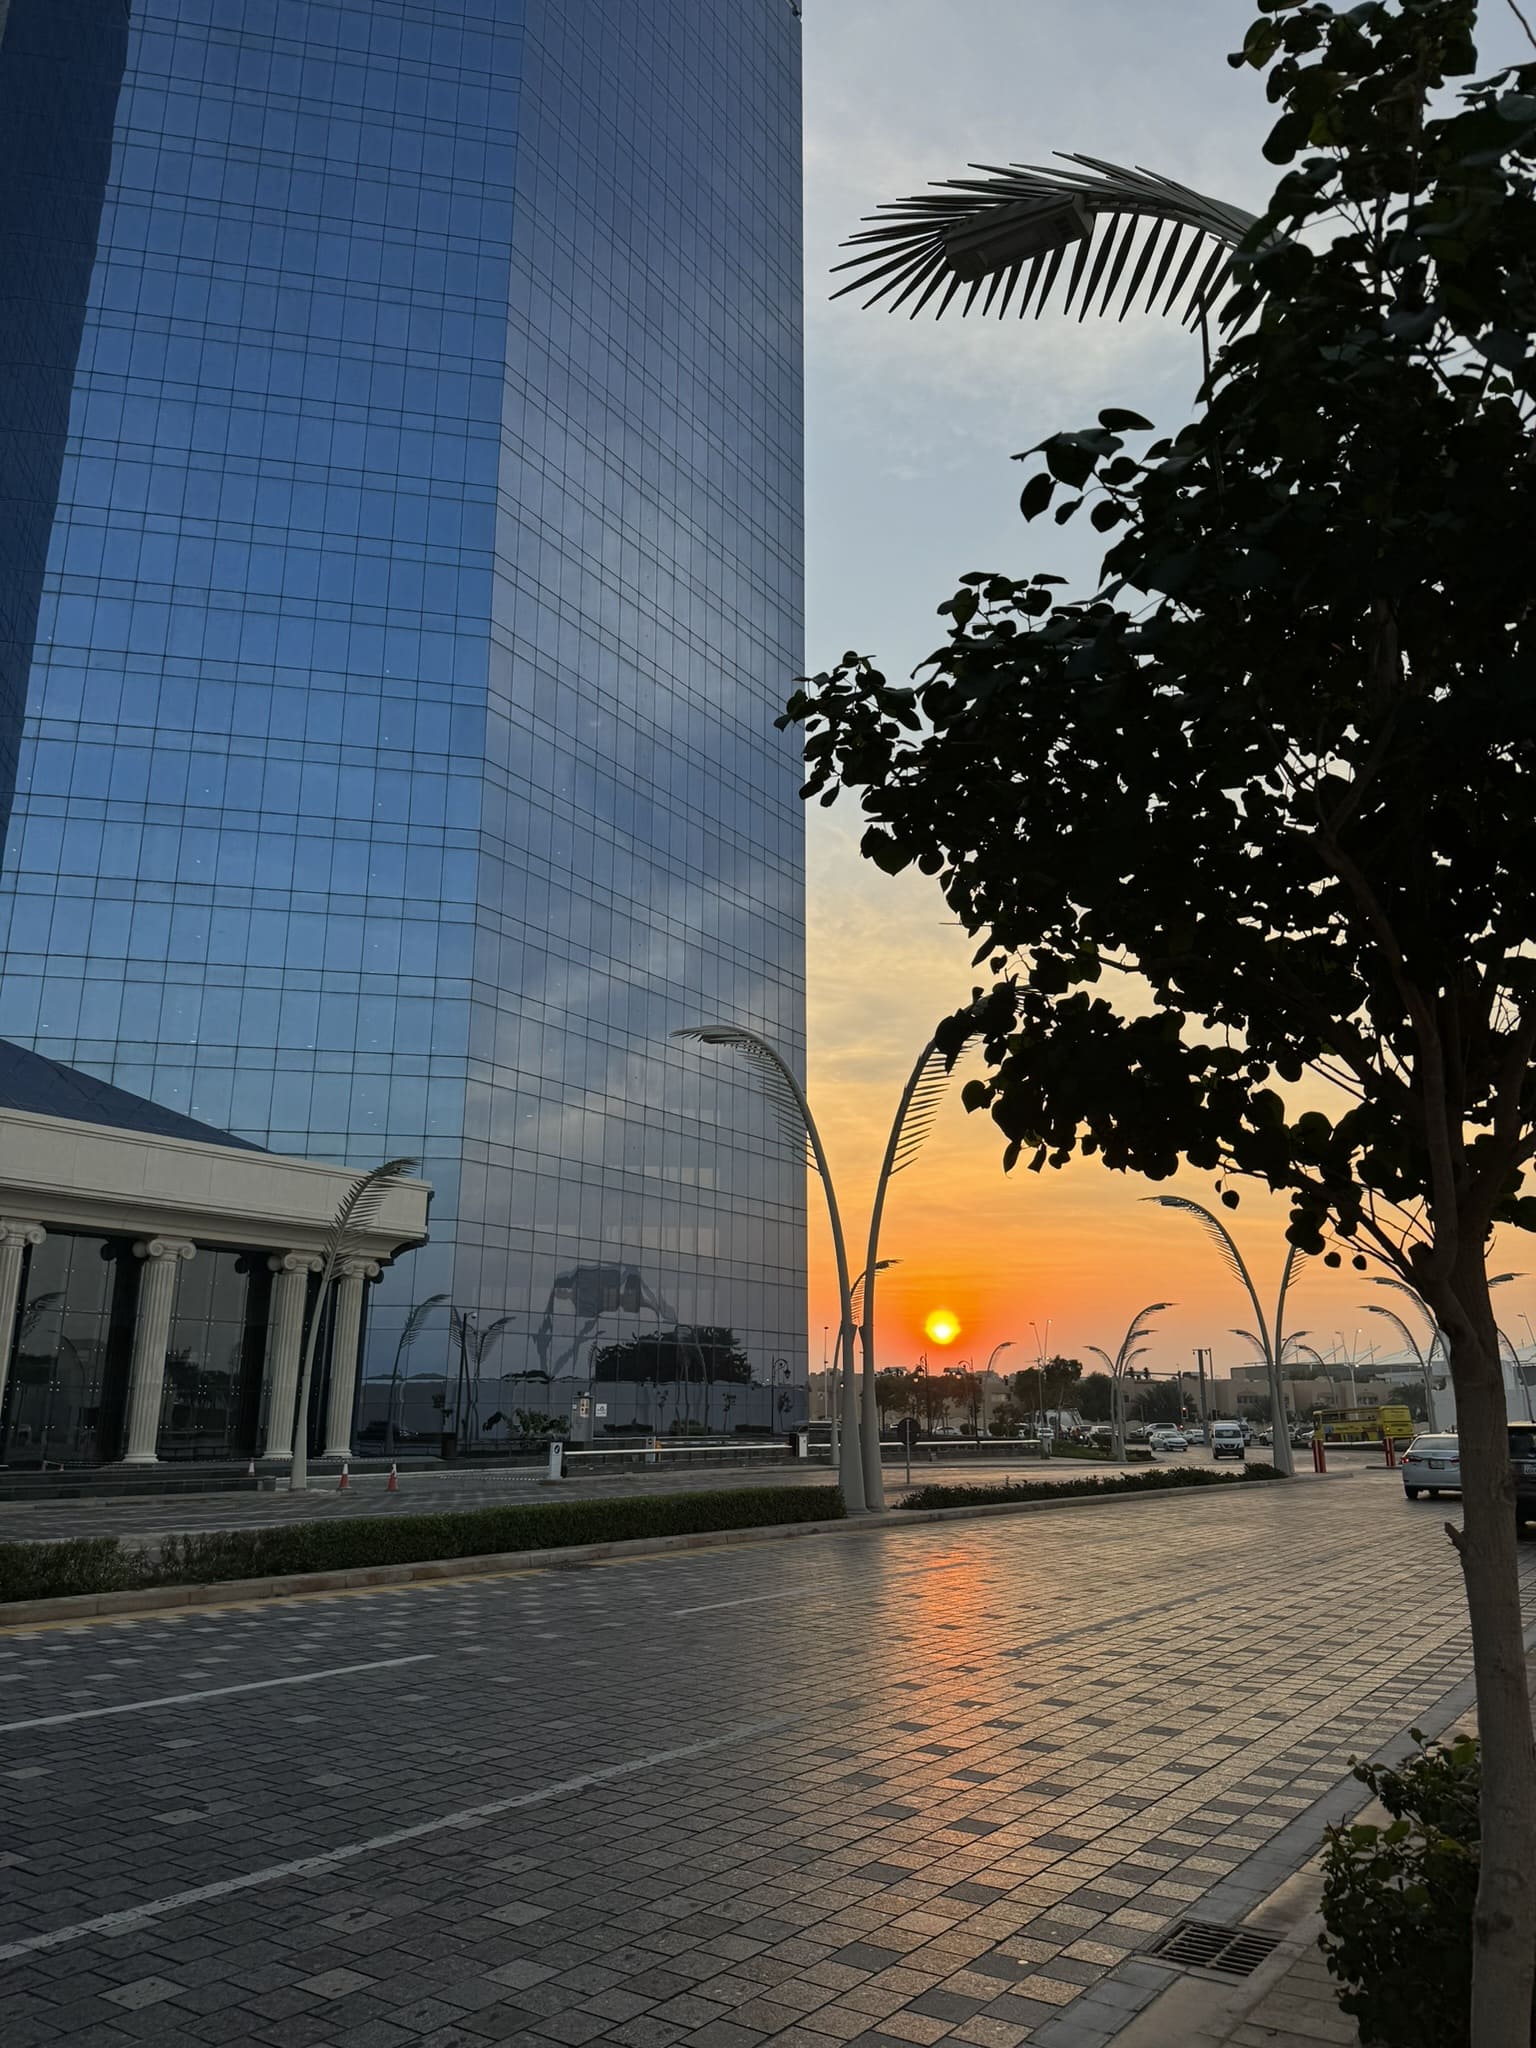 Sunset in Doha, Qatar